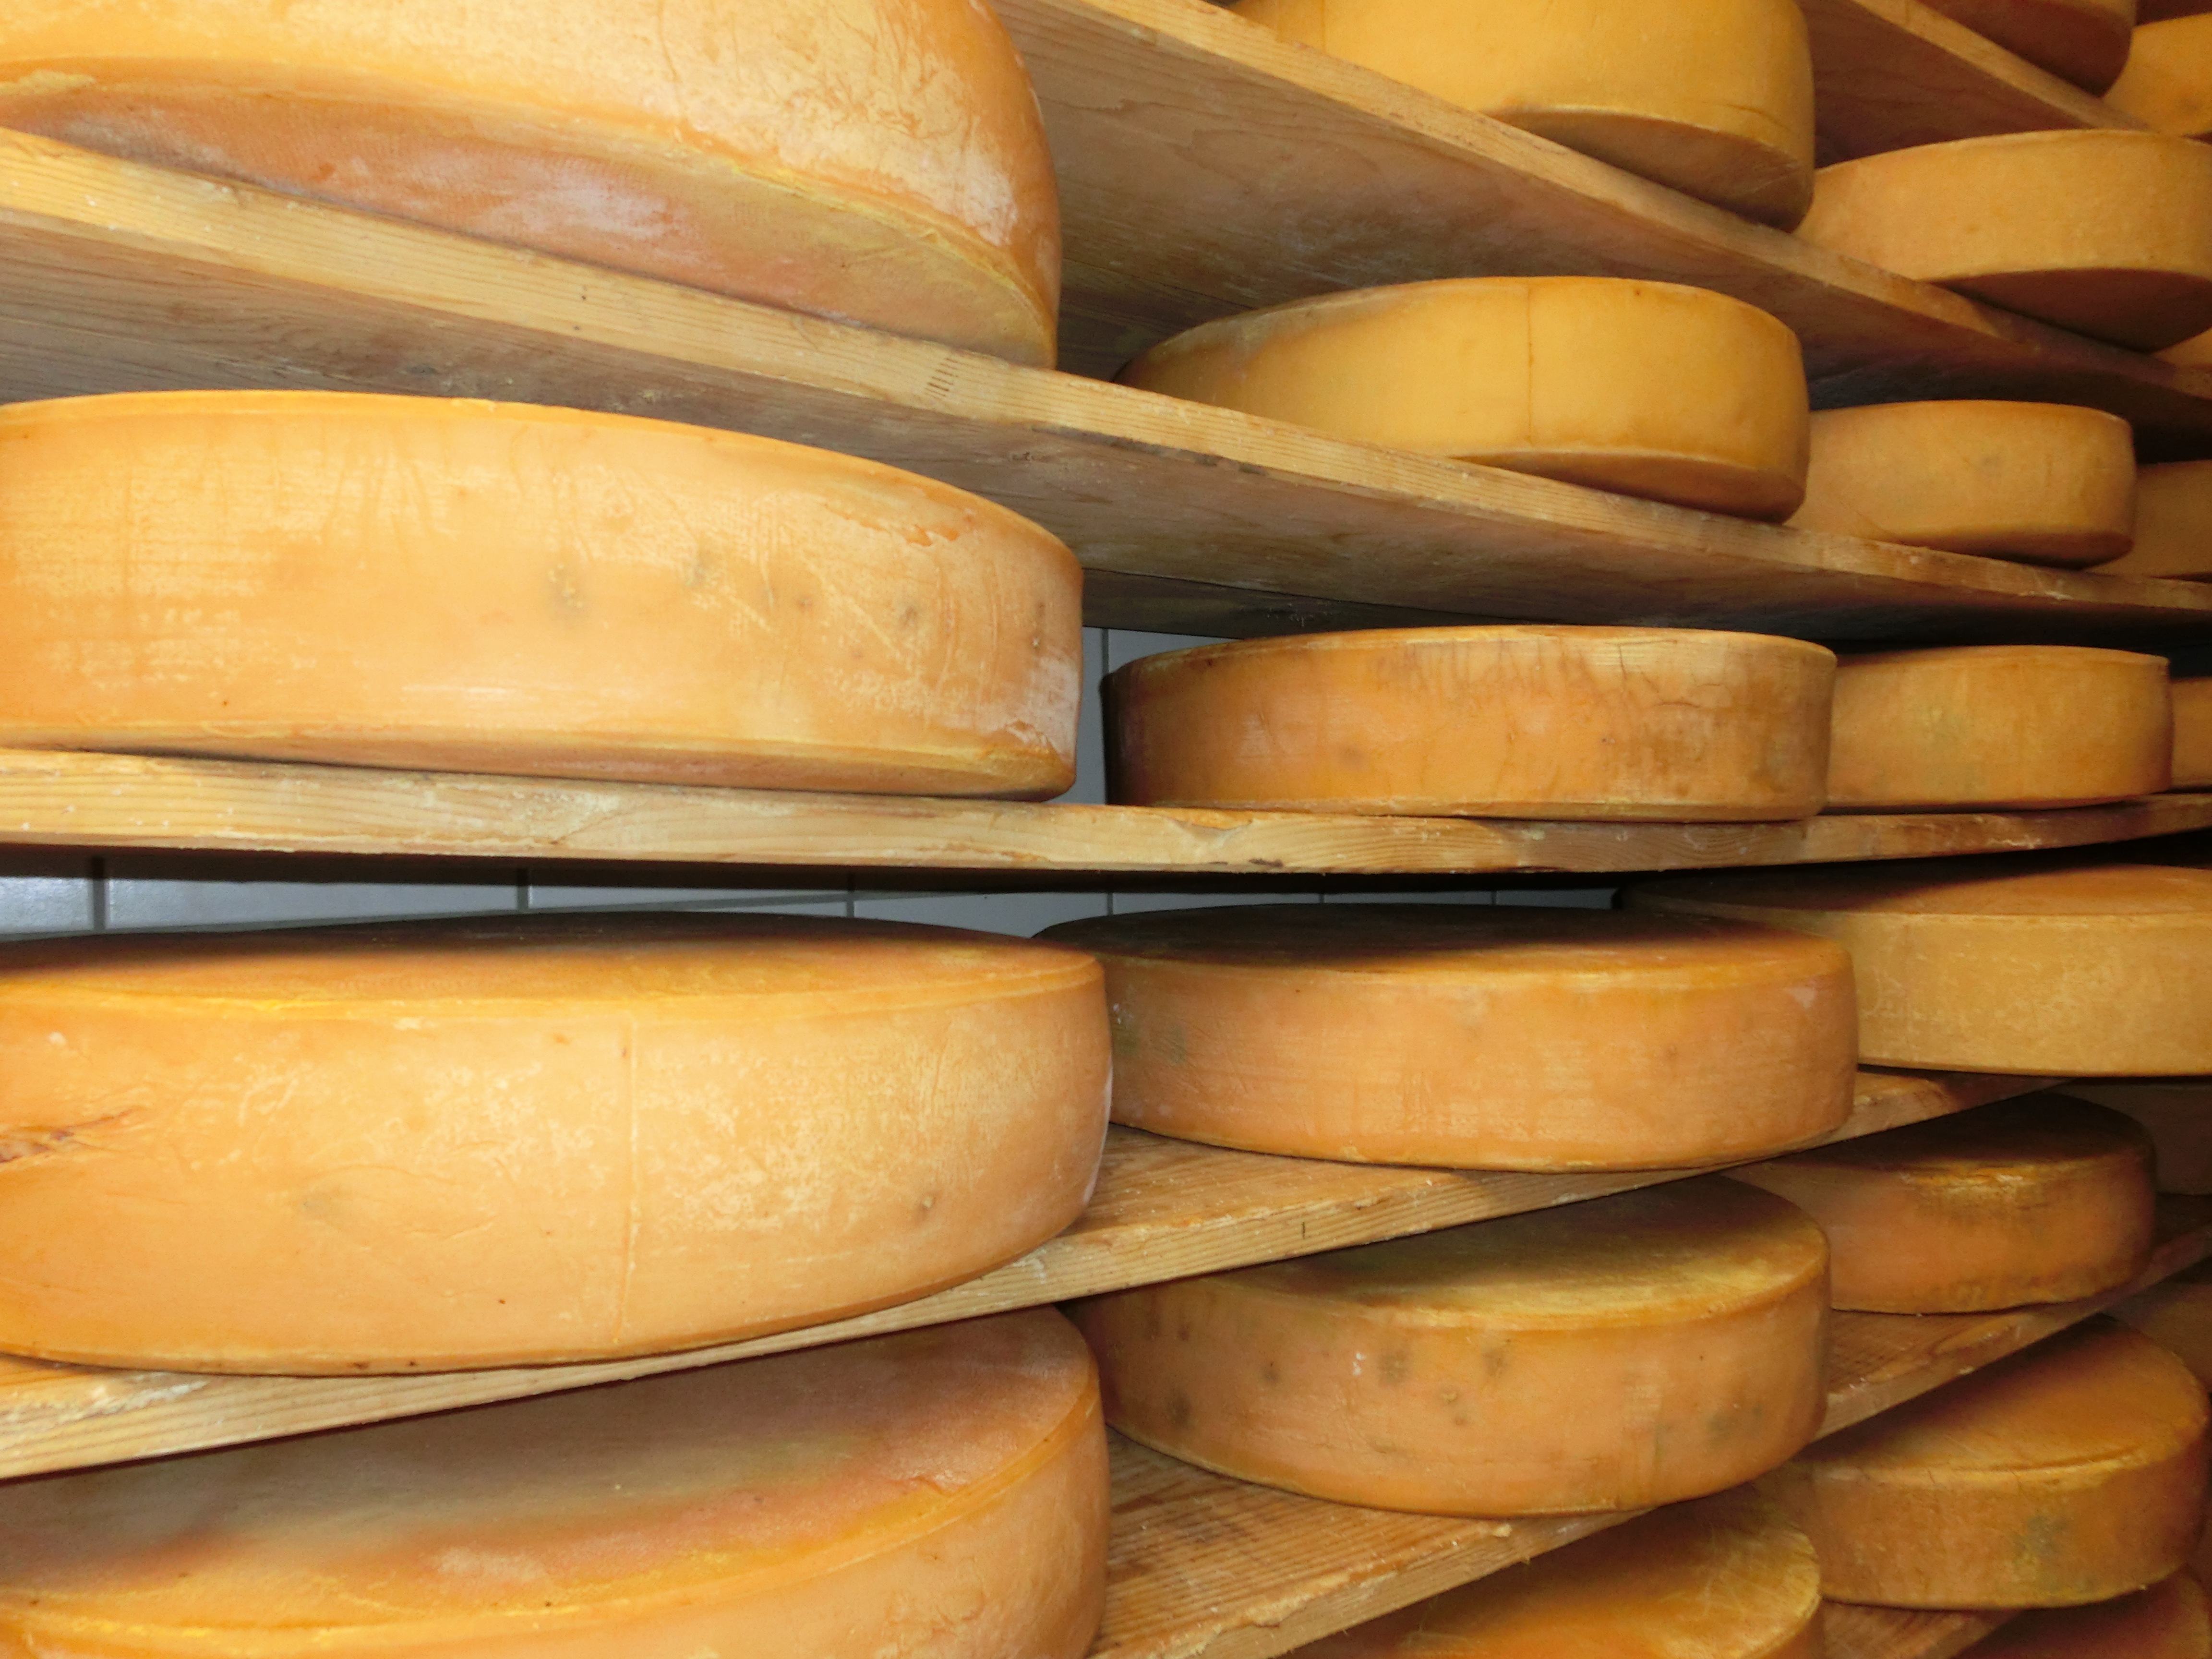  Runder Käse in Regalen - das Bild wird mit Klick vergrößert 